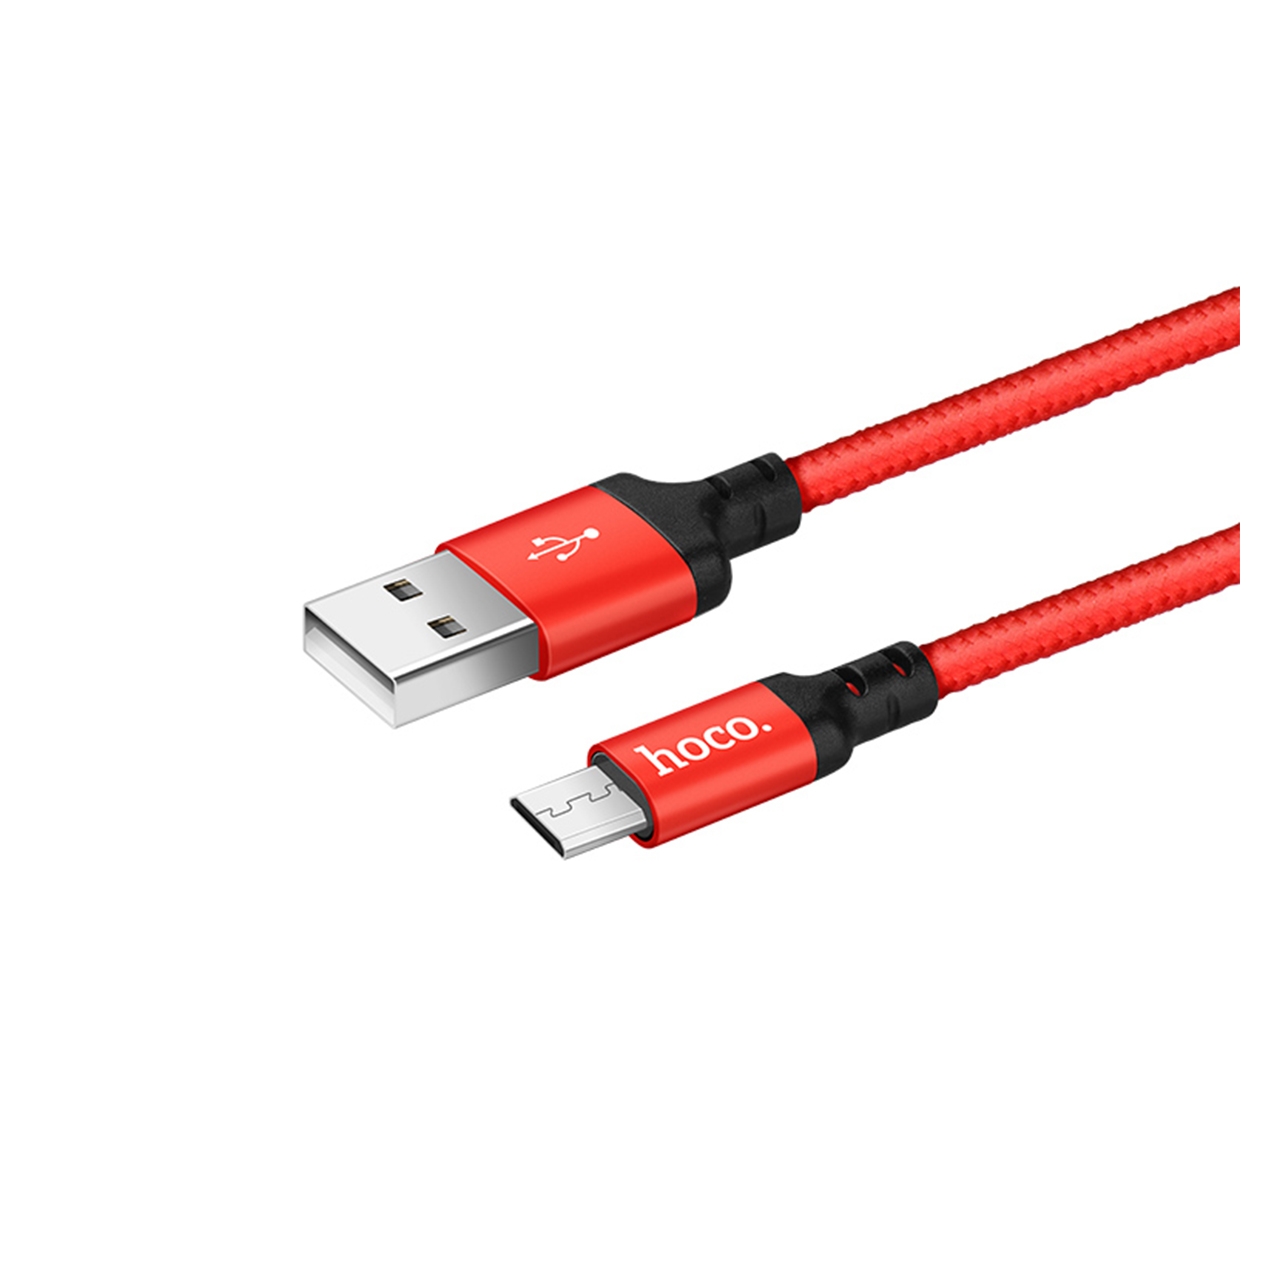 کابل تبدیل USB به microUSB هوکو مدل X14 طول 2 متر